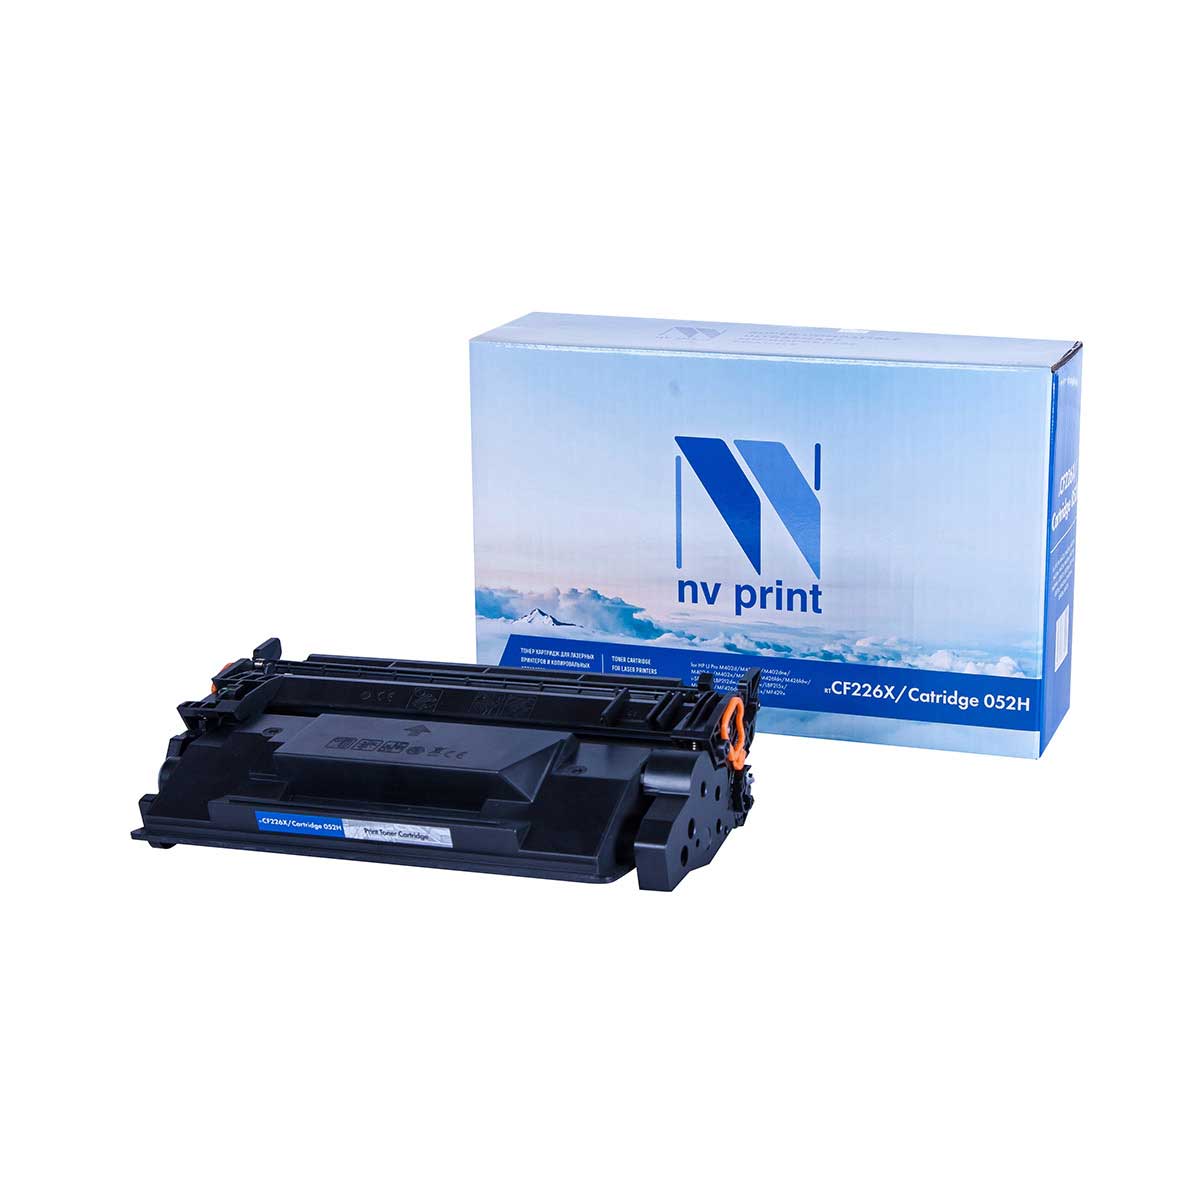 Картридж для лазерного принтера NV Print CF226X/052H, черный